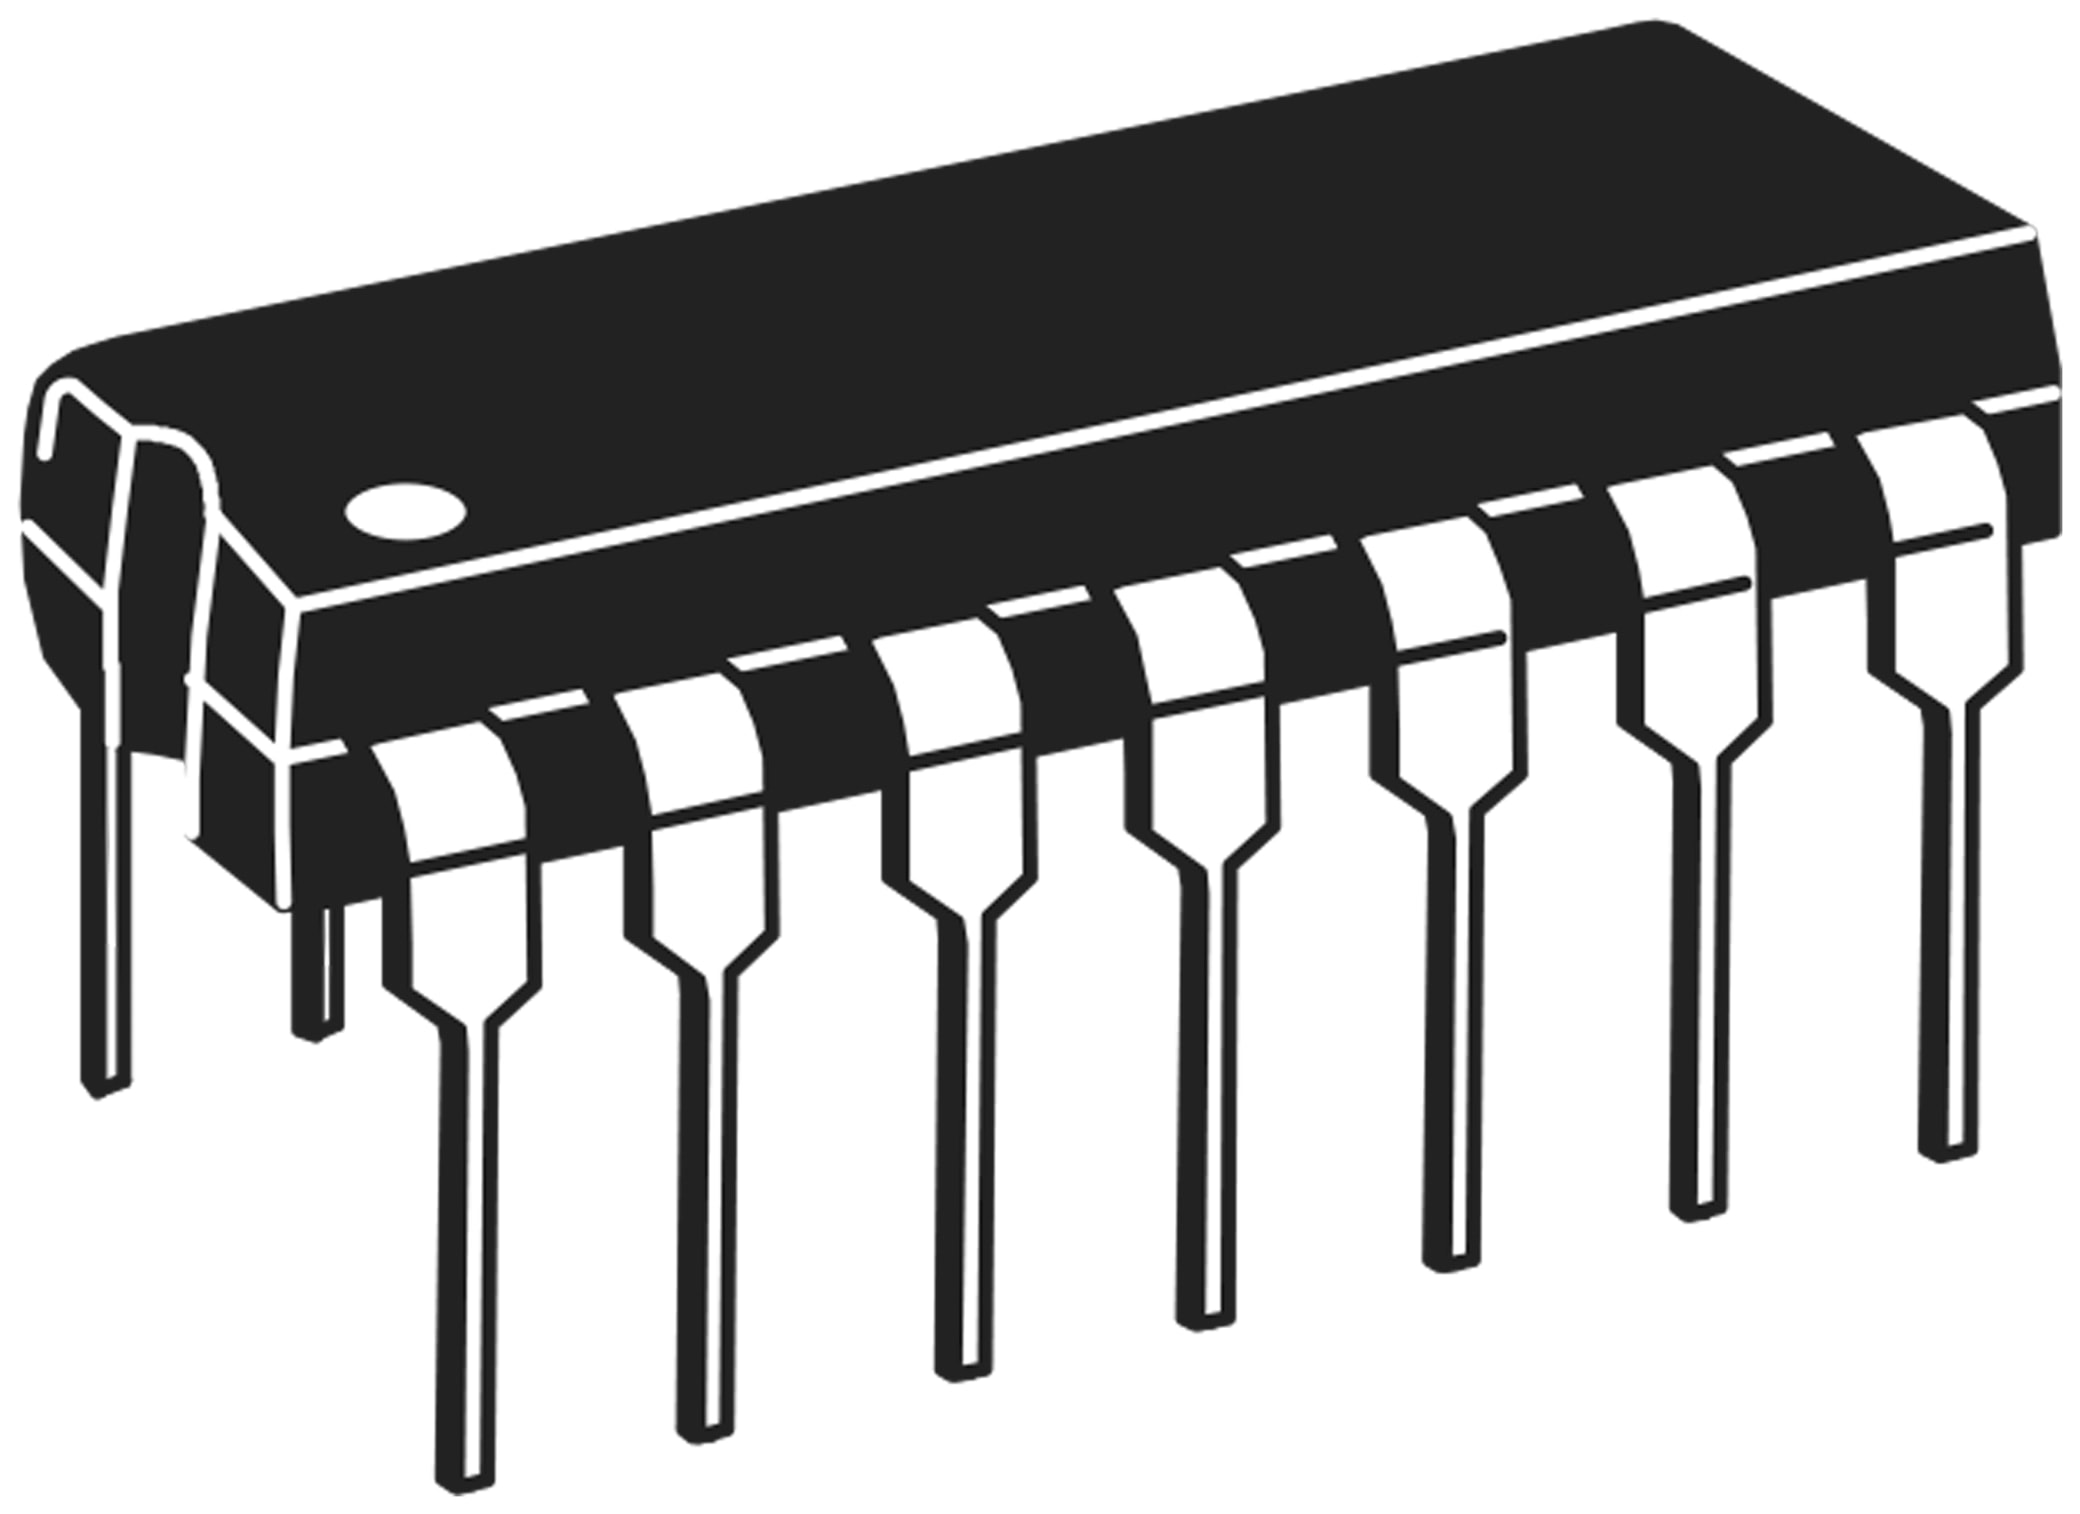 MICROCHIP Operationsverstärker, MCP604-I/P,